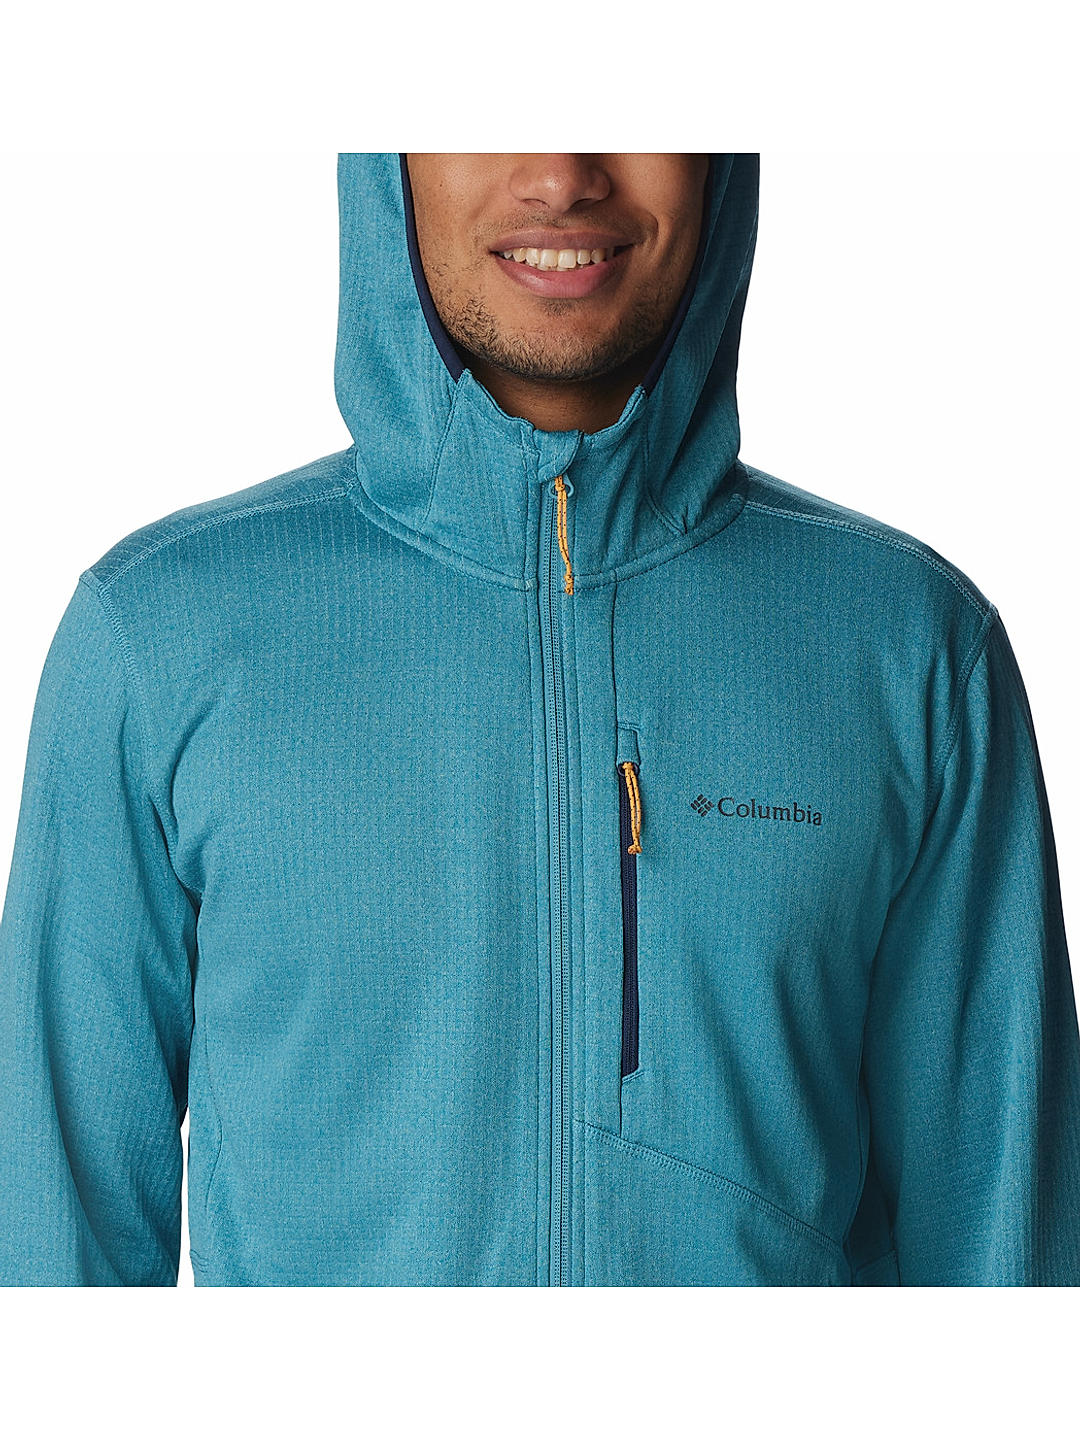 Buy Grey Park View Fleece Full Zip Hoodie for Men Online at Columbia  Sportswear